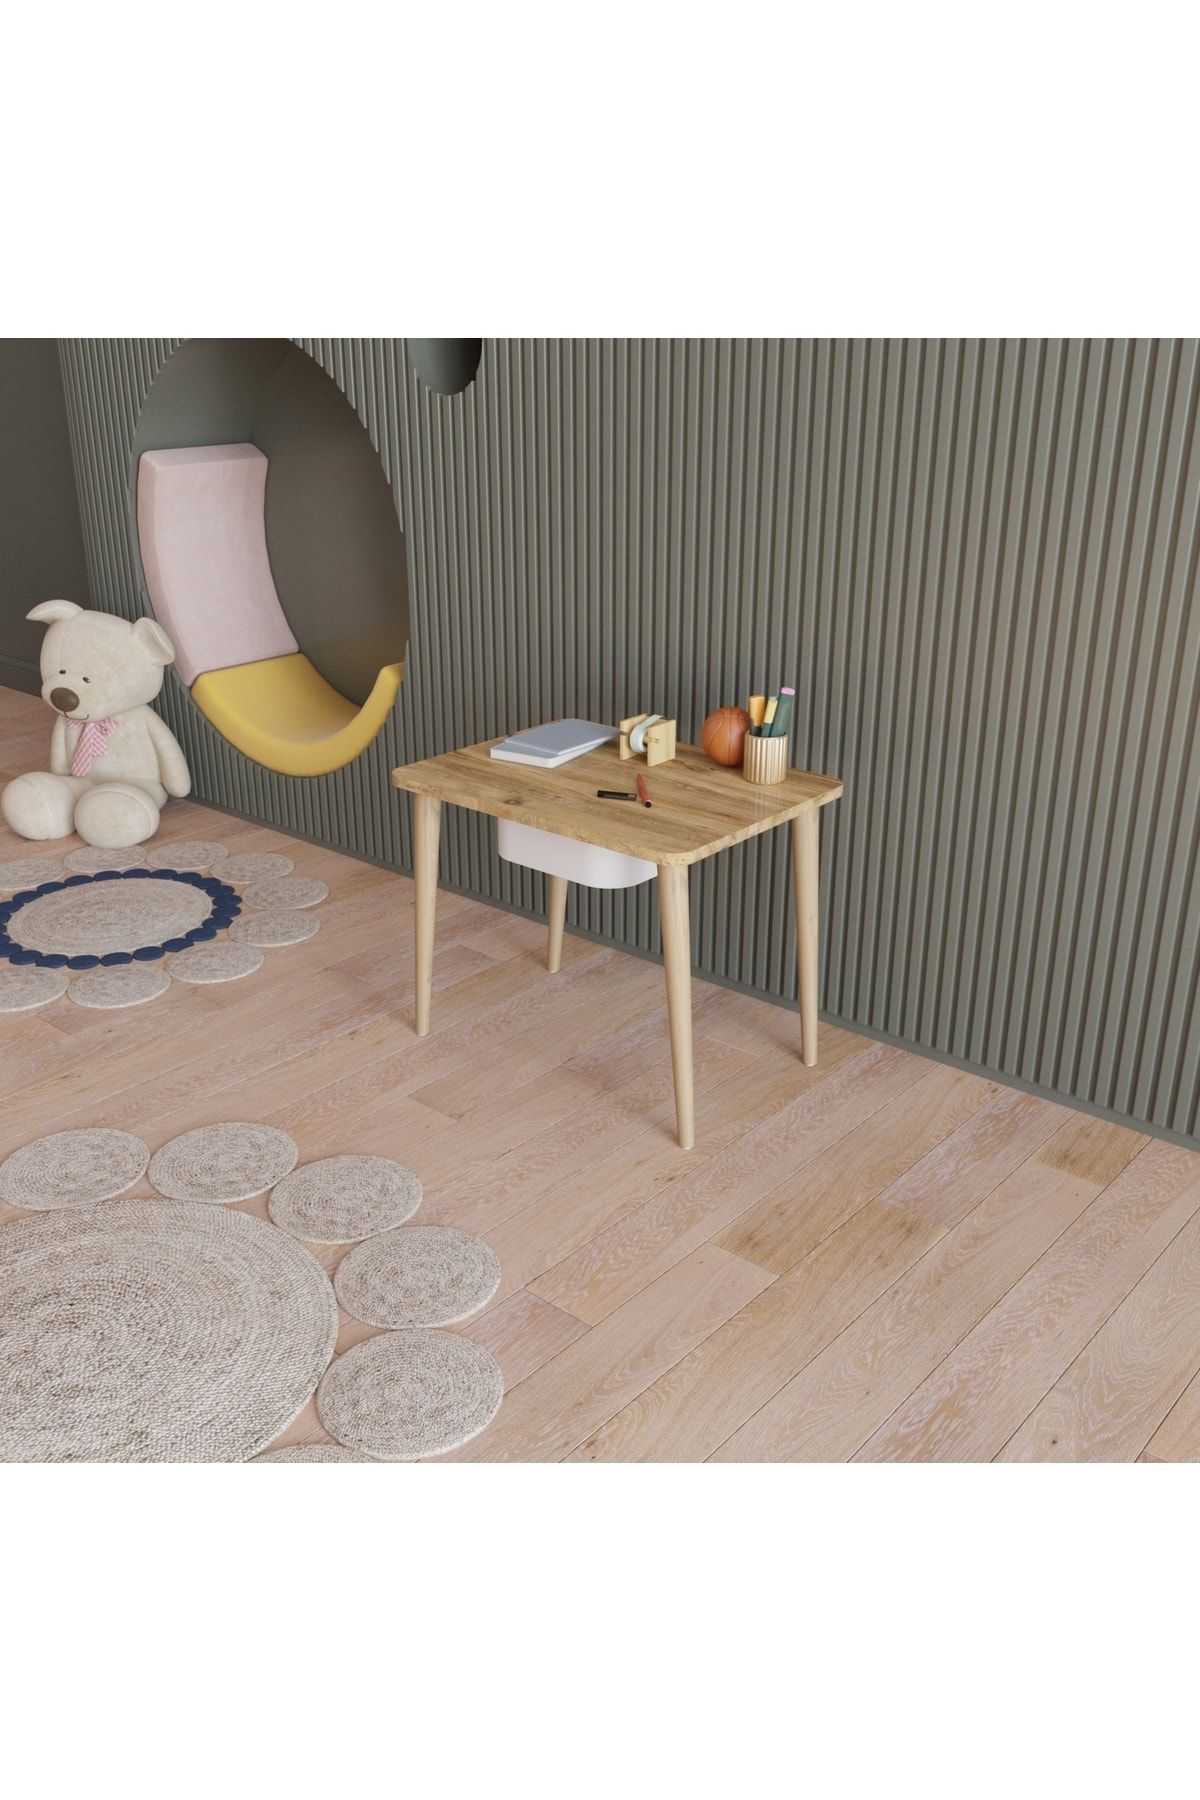 Fahrettin Küçük Montessori Çocuk Masası Çalışma Masası Çekmeceli Aktivite Masası Oyun Masası 45x60 Cm